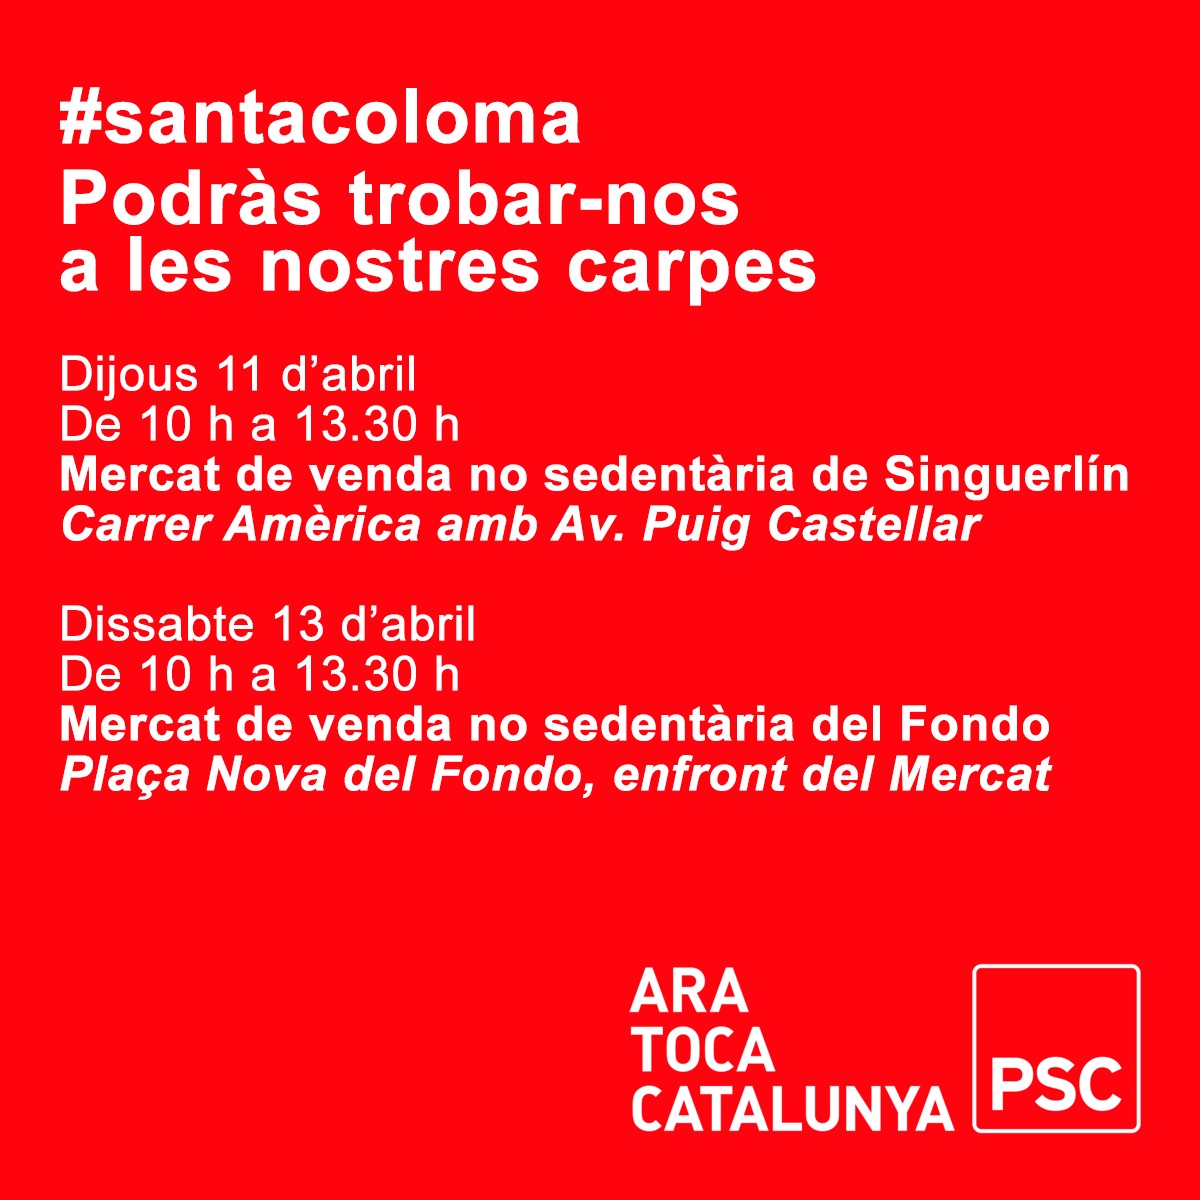 ☀️ Bon dia #santacoloma!!!
Vine a veure'ns a les nostres carpes d'aquesta setmana. 🌹